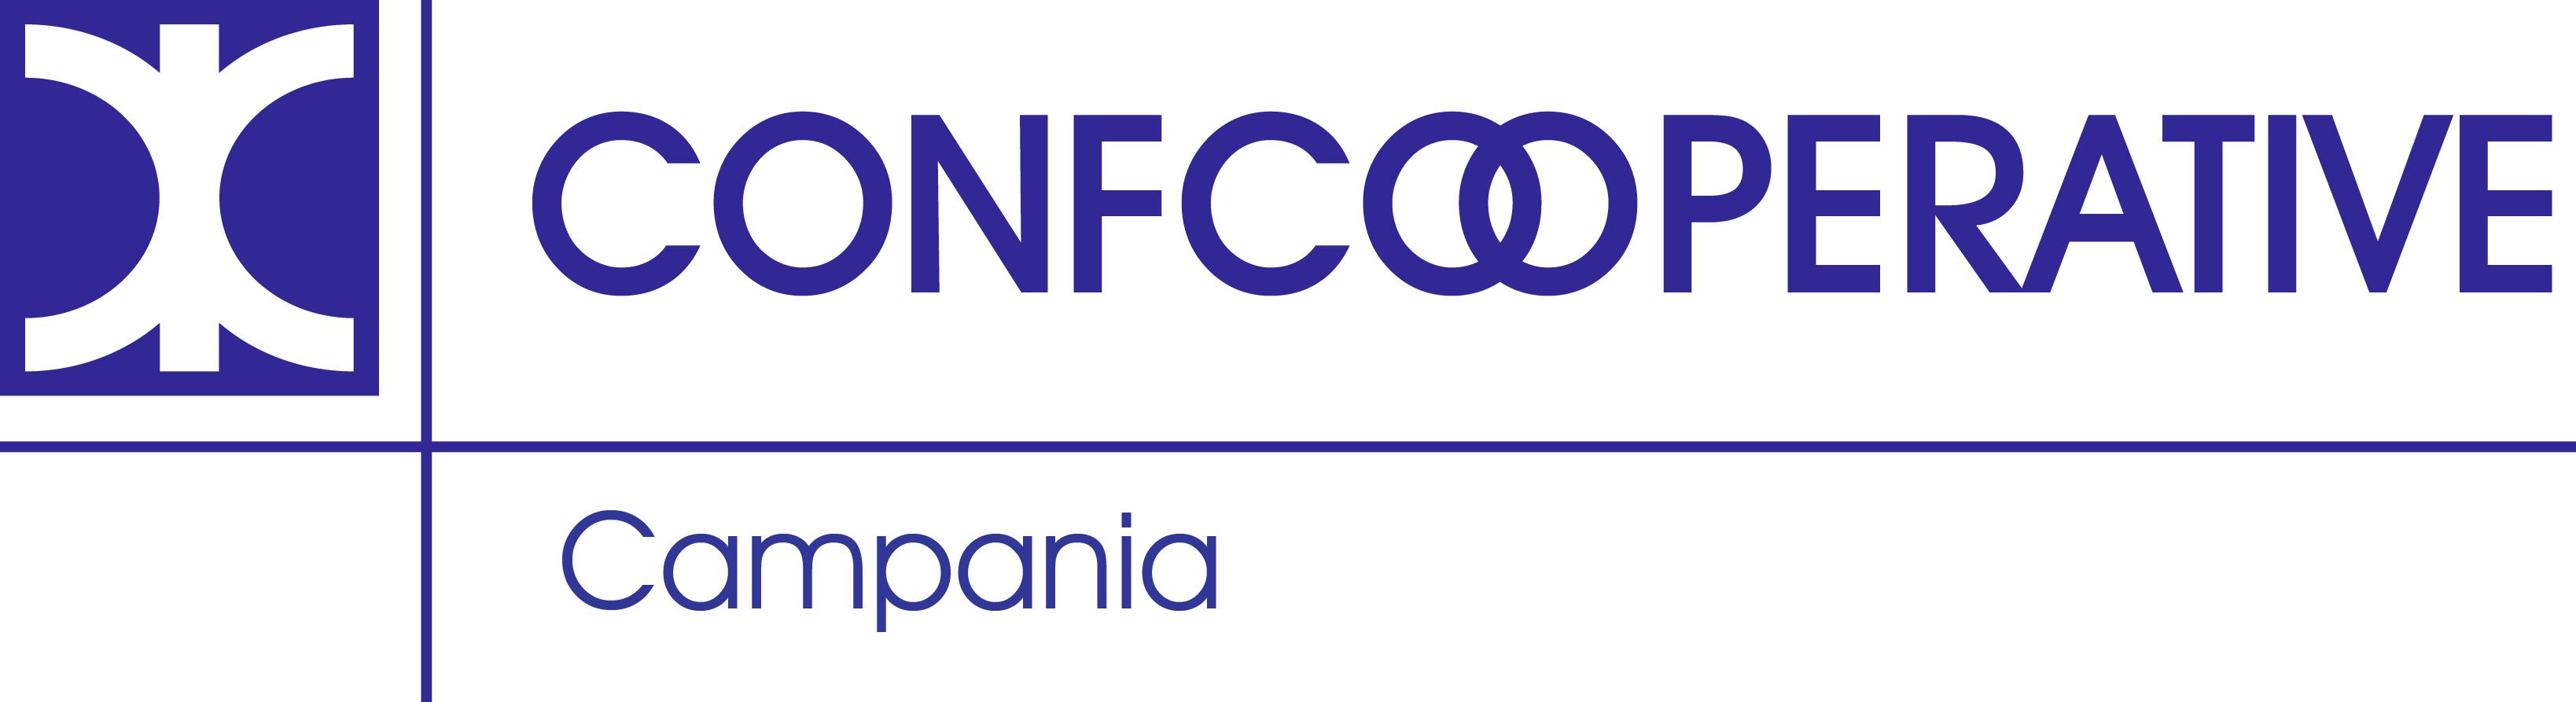 Confcooperative Campania per il prossimo futuro